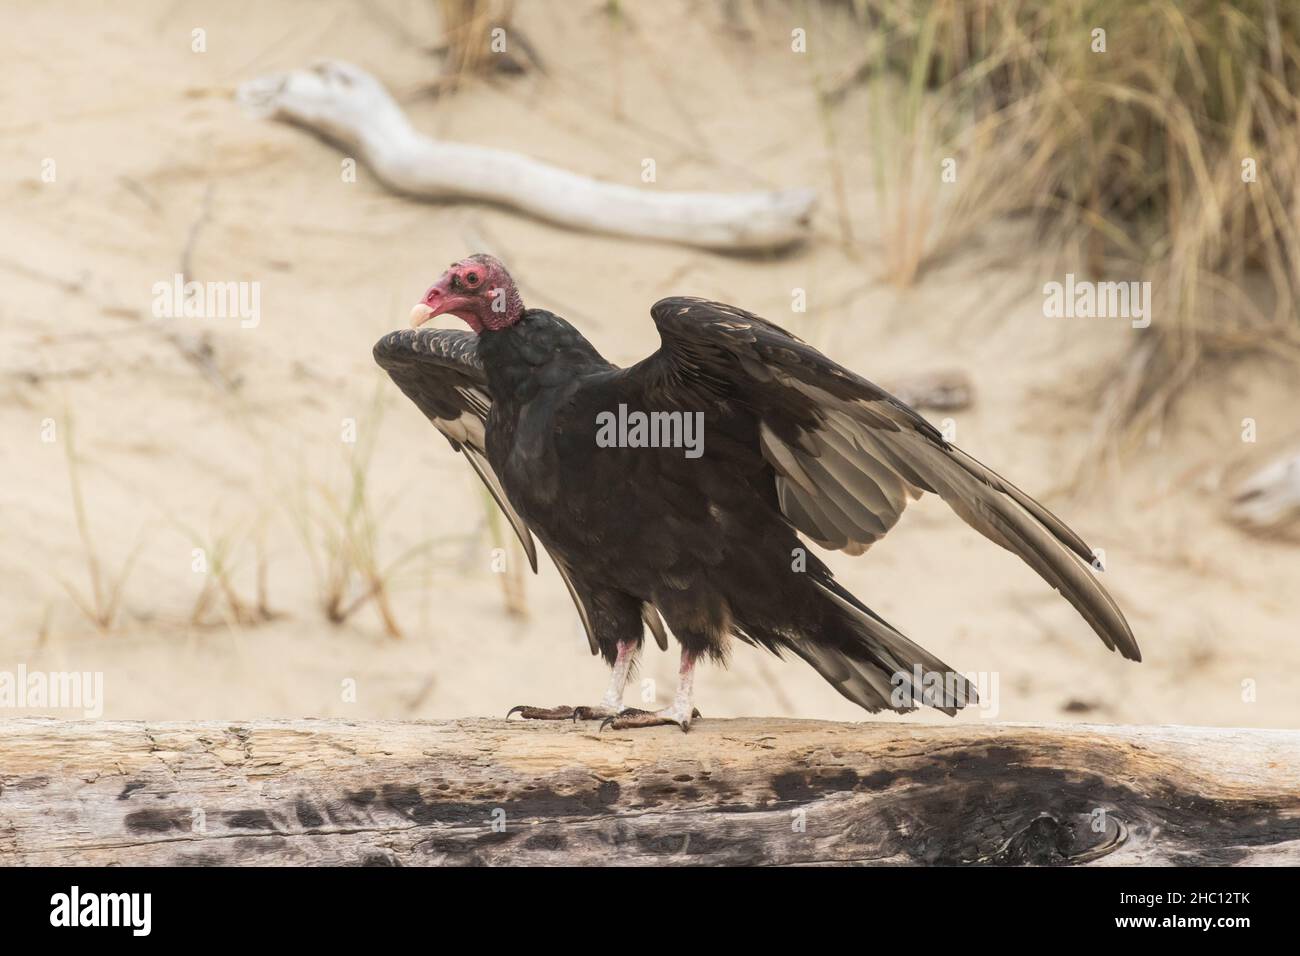 Turkey Vulture on the Beach Stock Photo